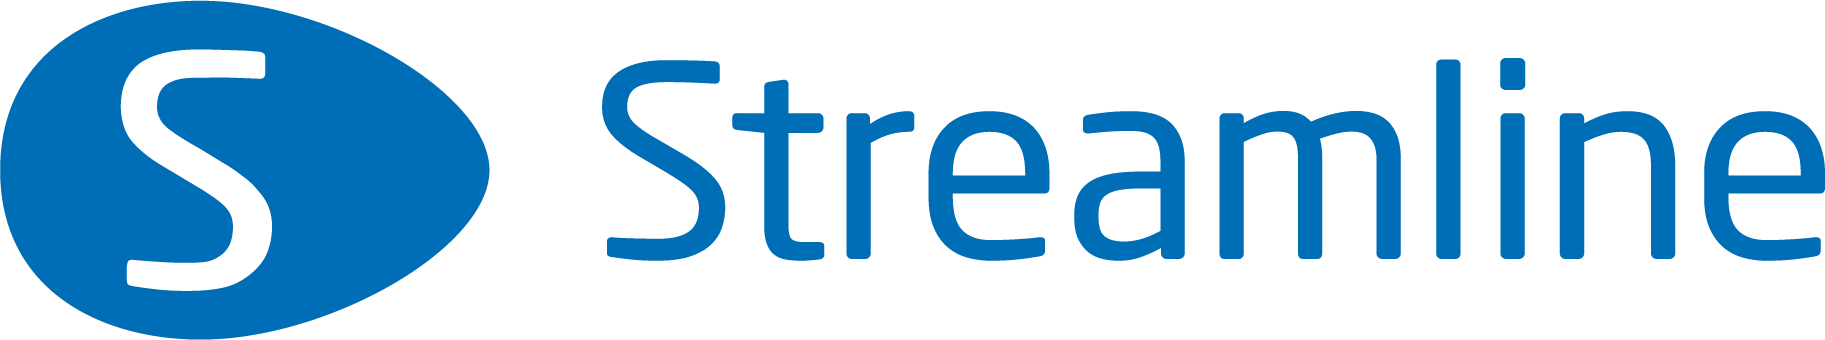 Streamline logo blå